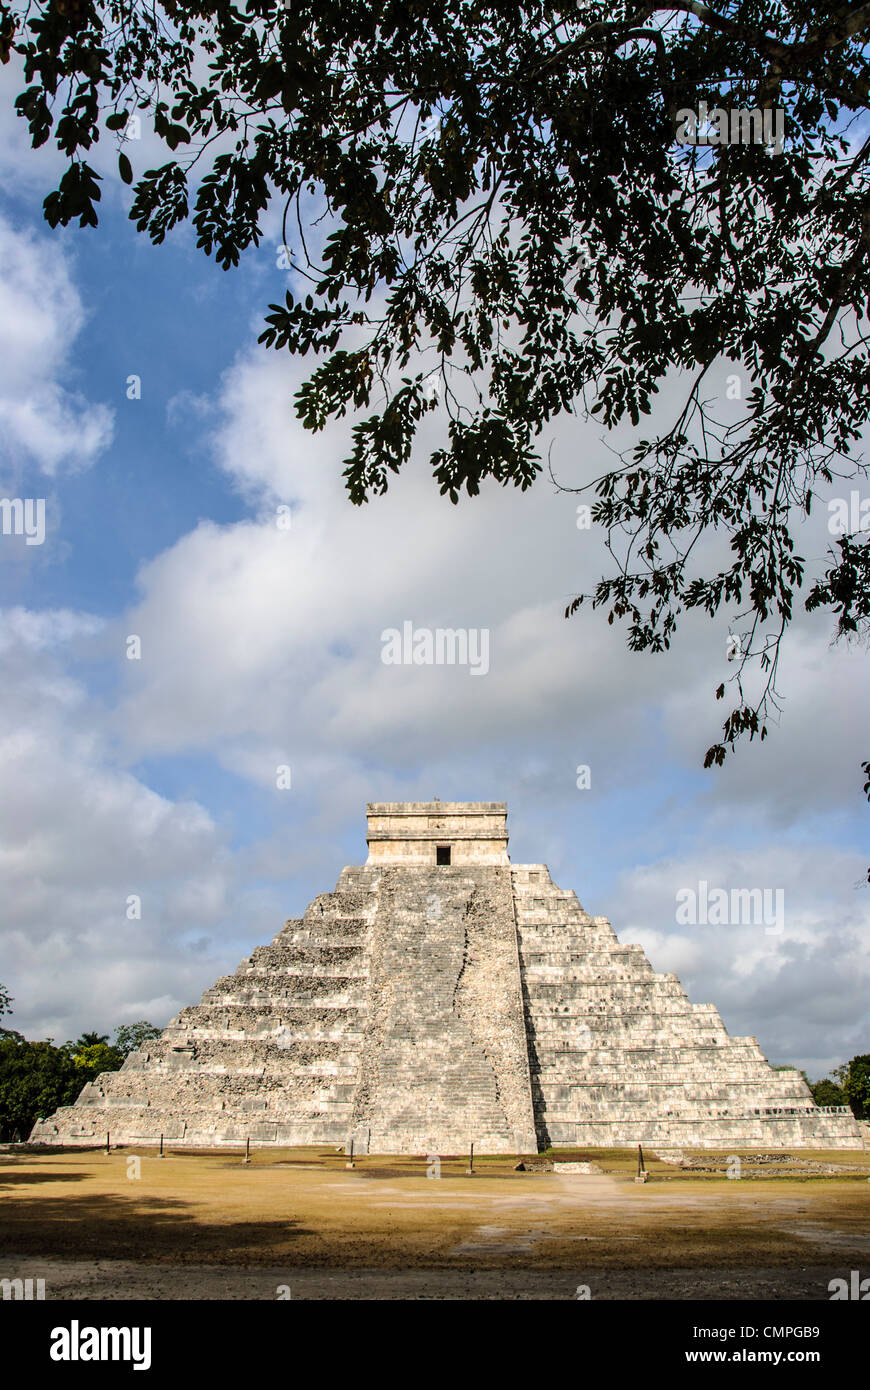 CHICHEN ITZA, Mexique - Temple de Kukulkan (El Castillo) à la Zone archéologique de Chichen Itza, les ruines d'une importante ville de la civilisation Maya au coeur de la péninsule du Yucatan au Mexique. Banque D'Images